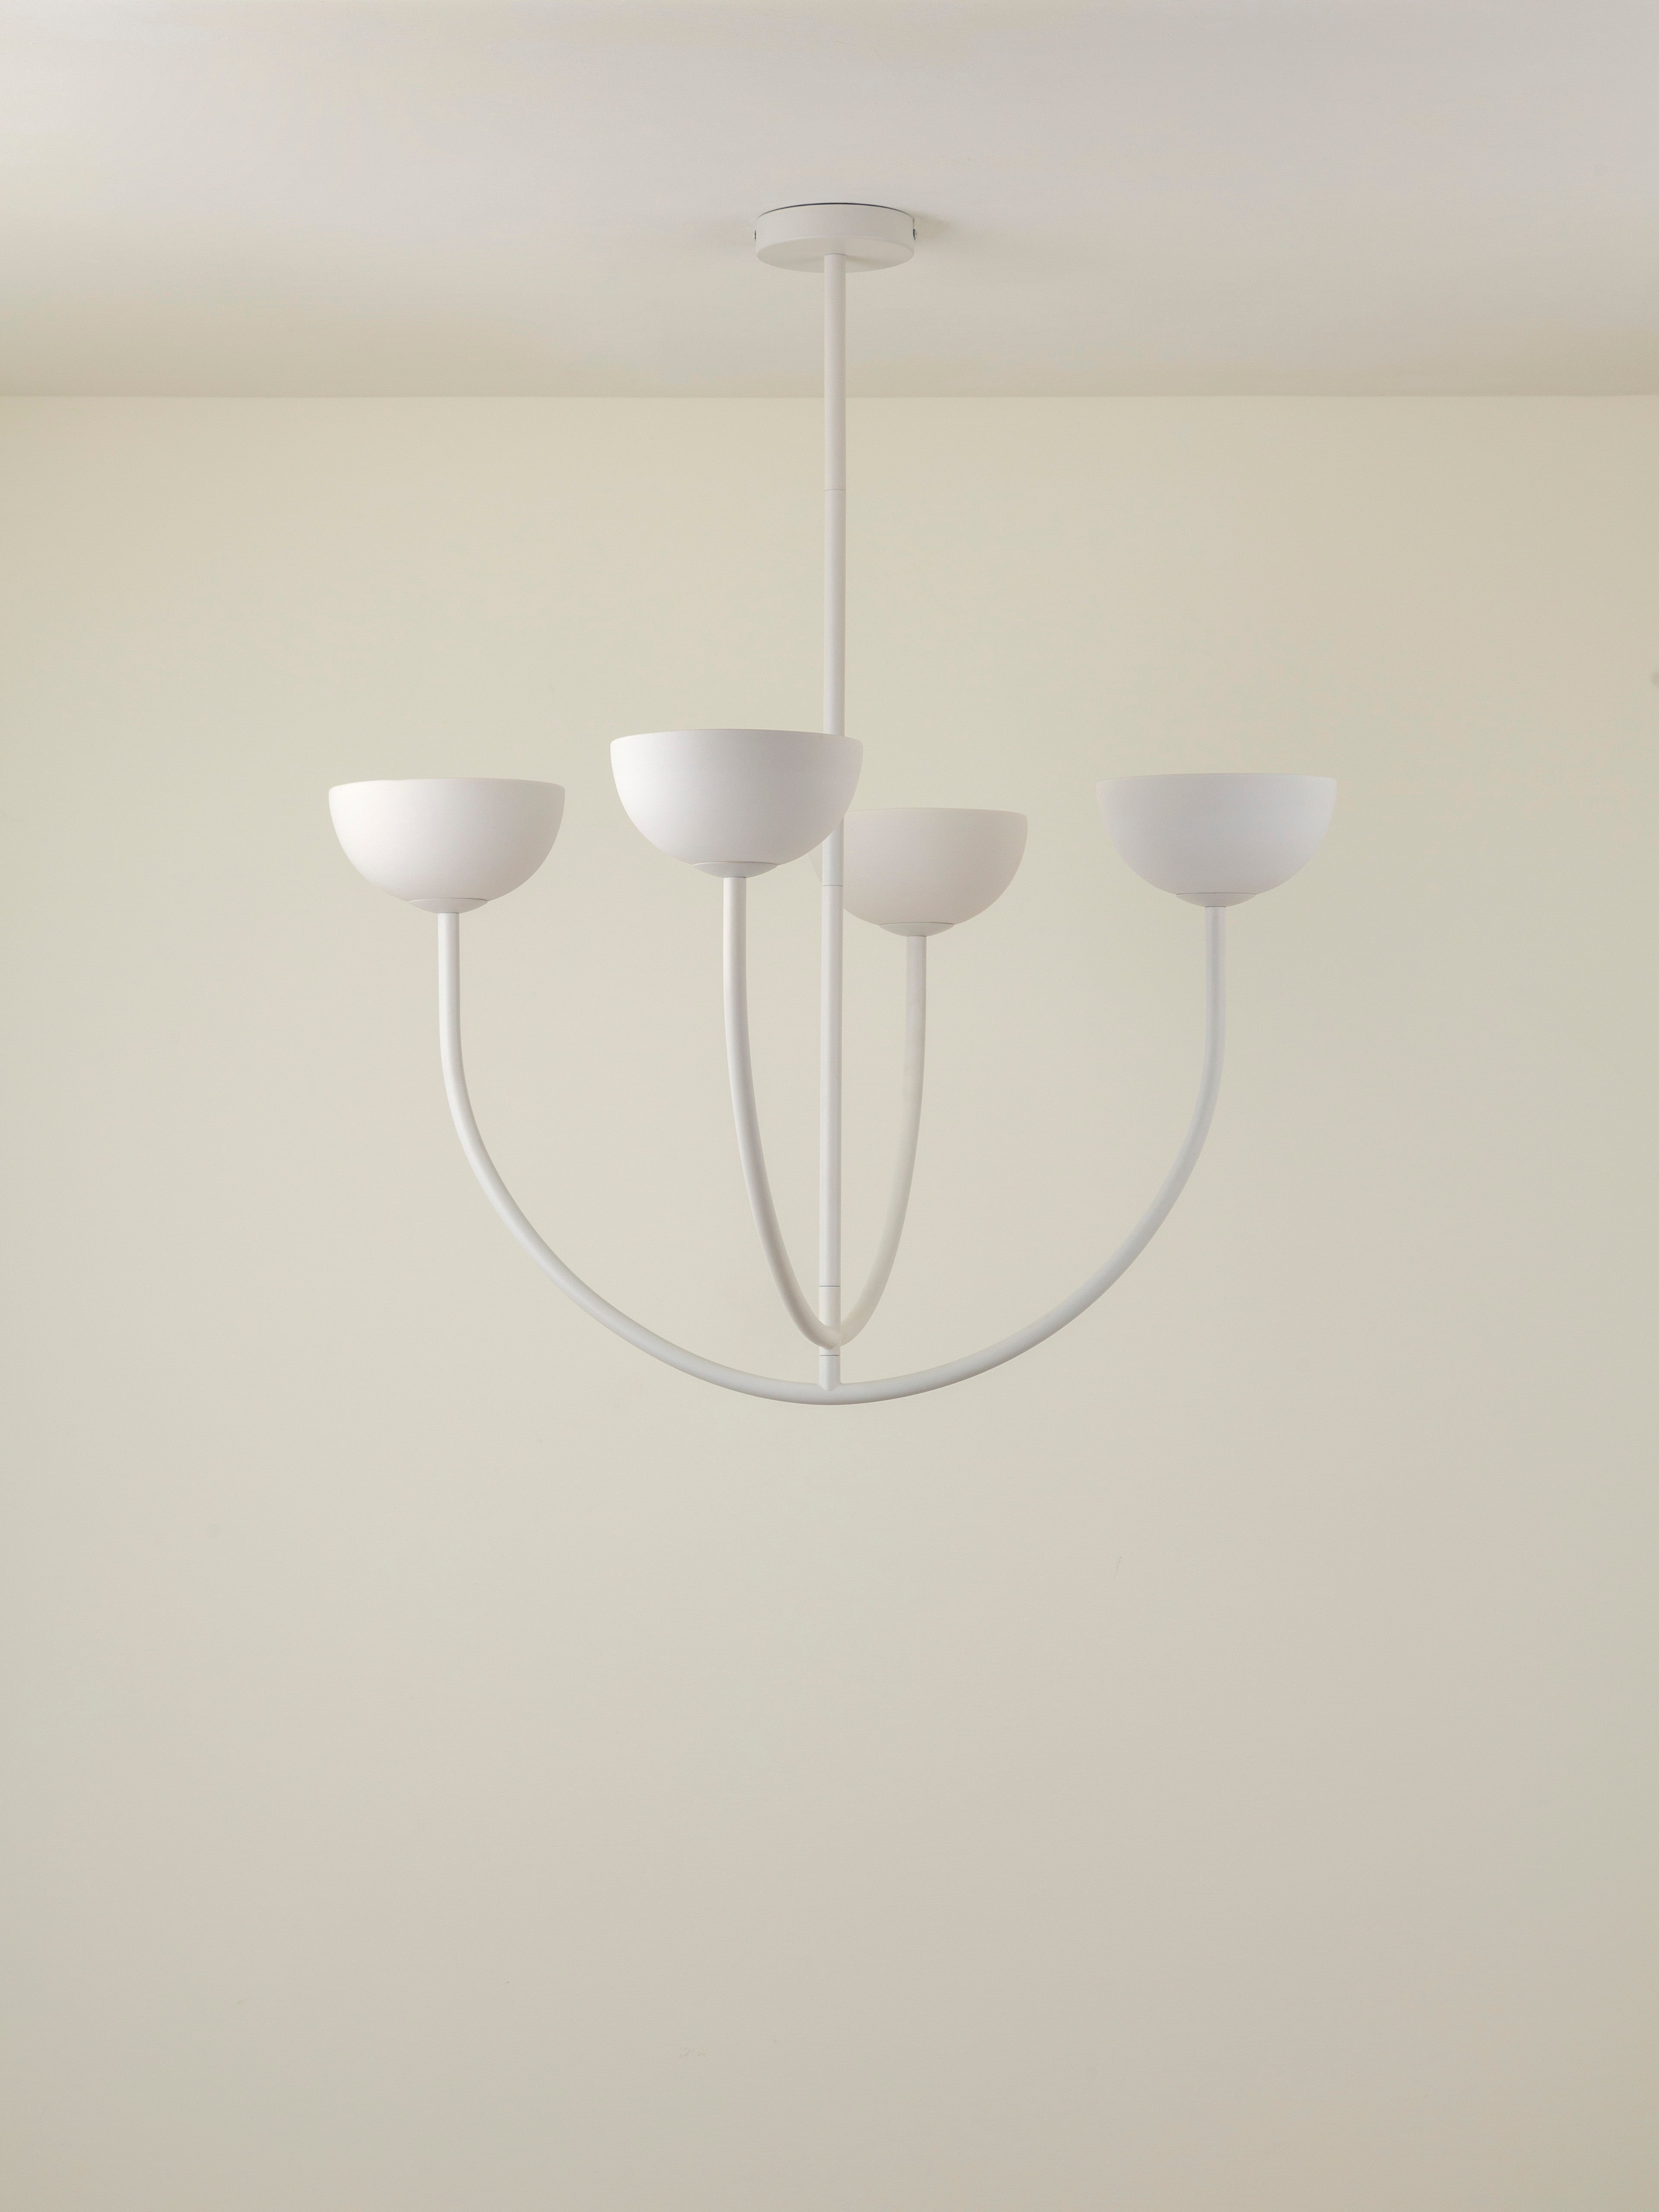 Ruzo - 4 light matt warm white and white porcelain ceiling pendant | Chandelier | Lights & Lamps | UK